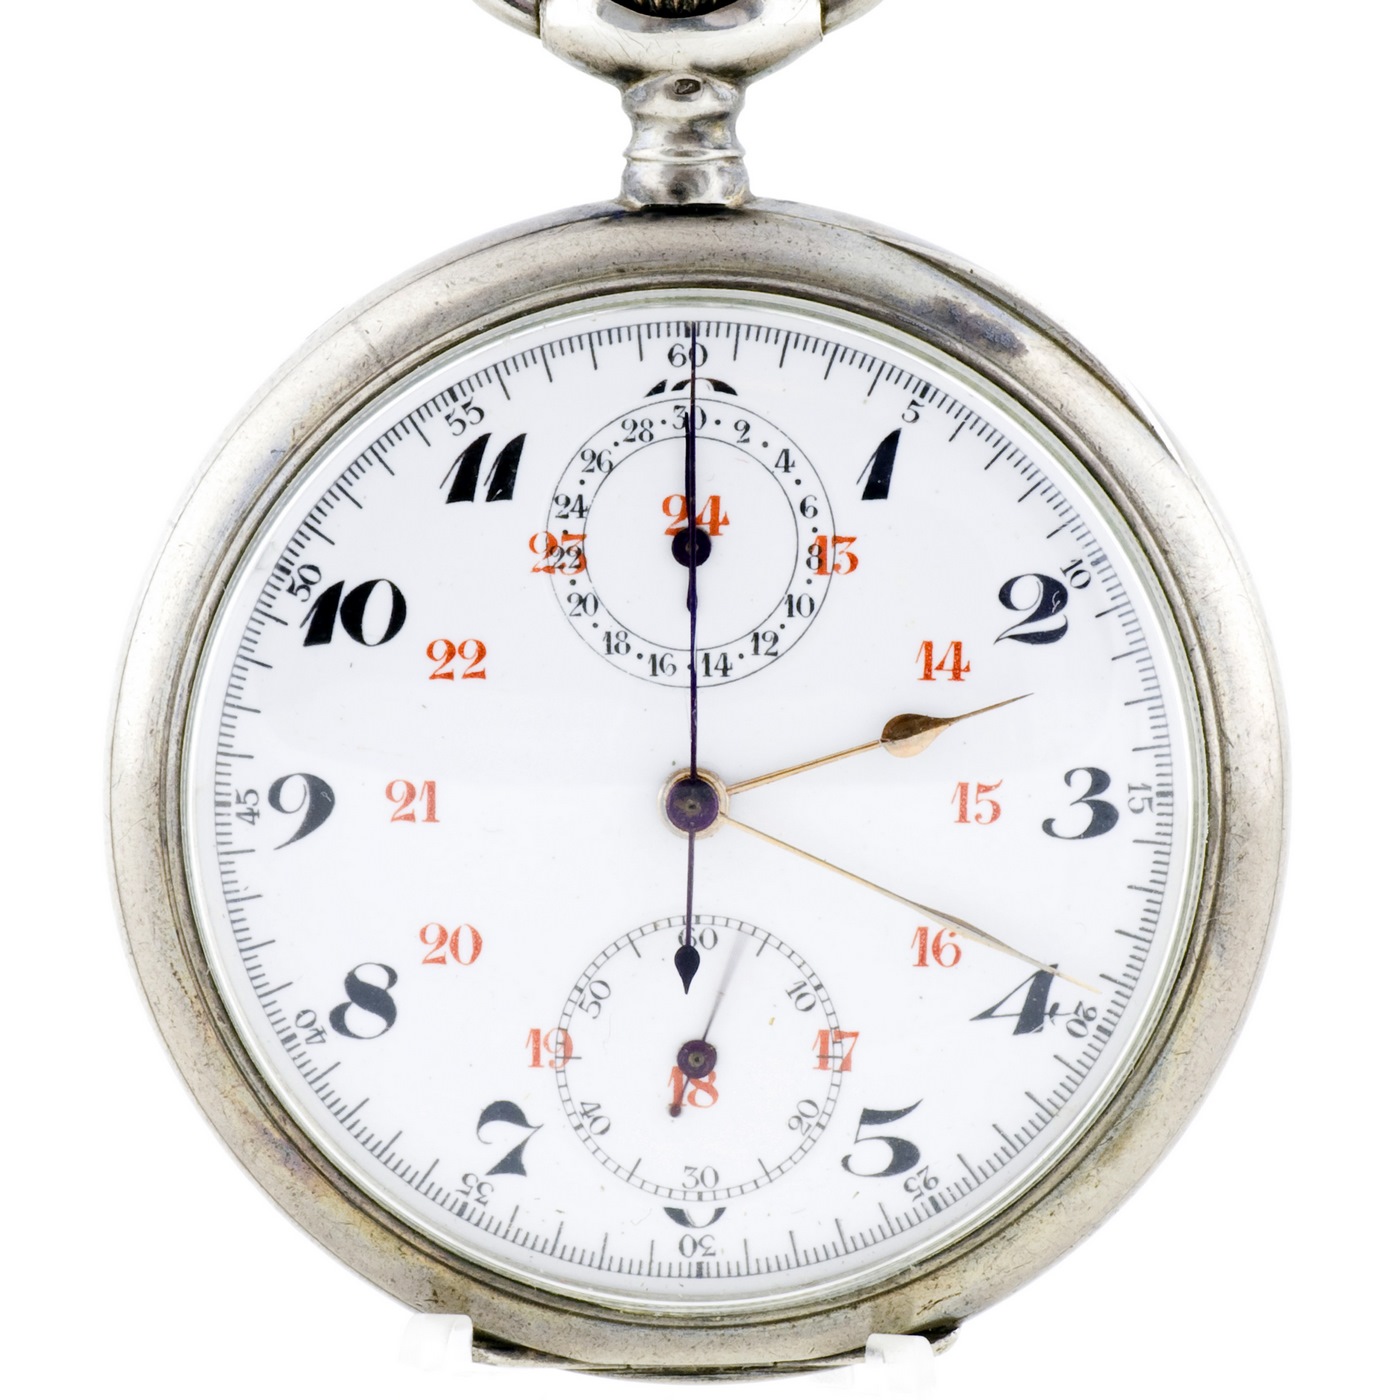 Reloj-Cronómetro Suizo, Lepine y remontoir. Suiza, ca. 1890.